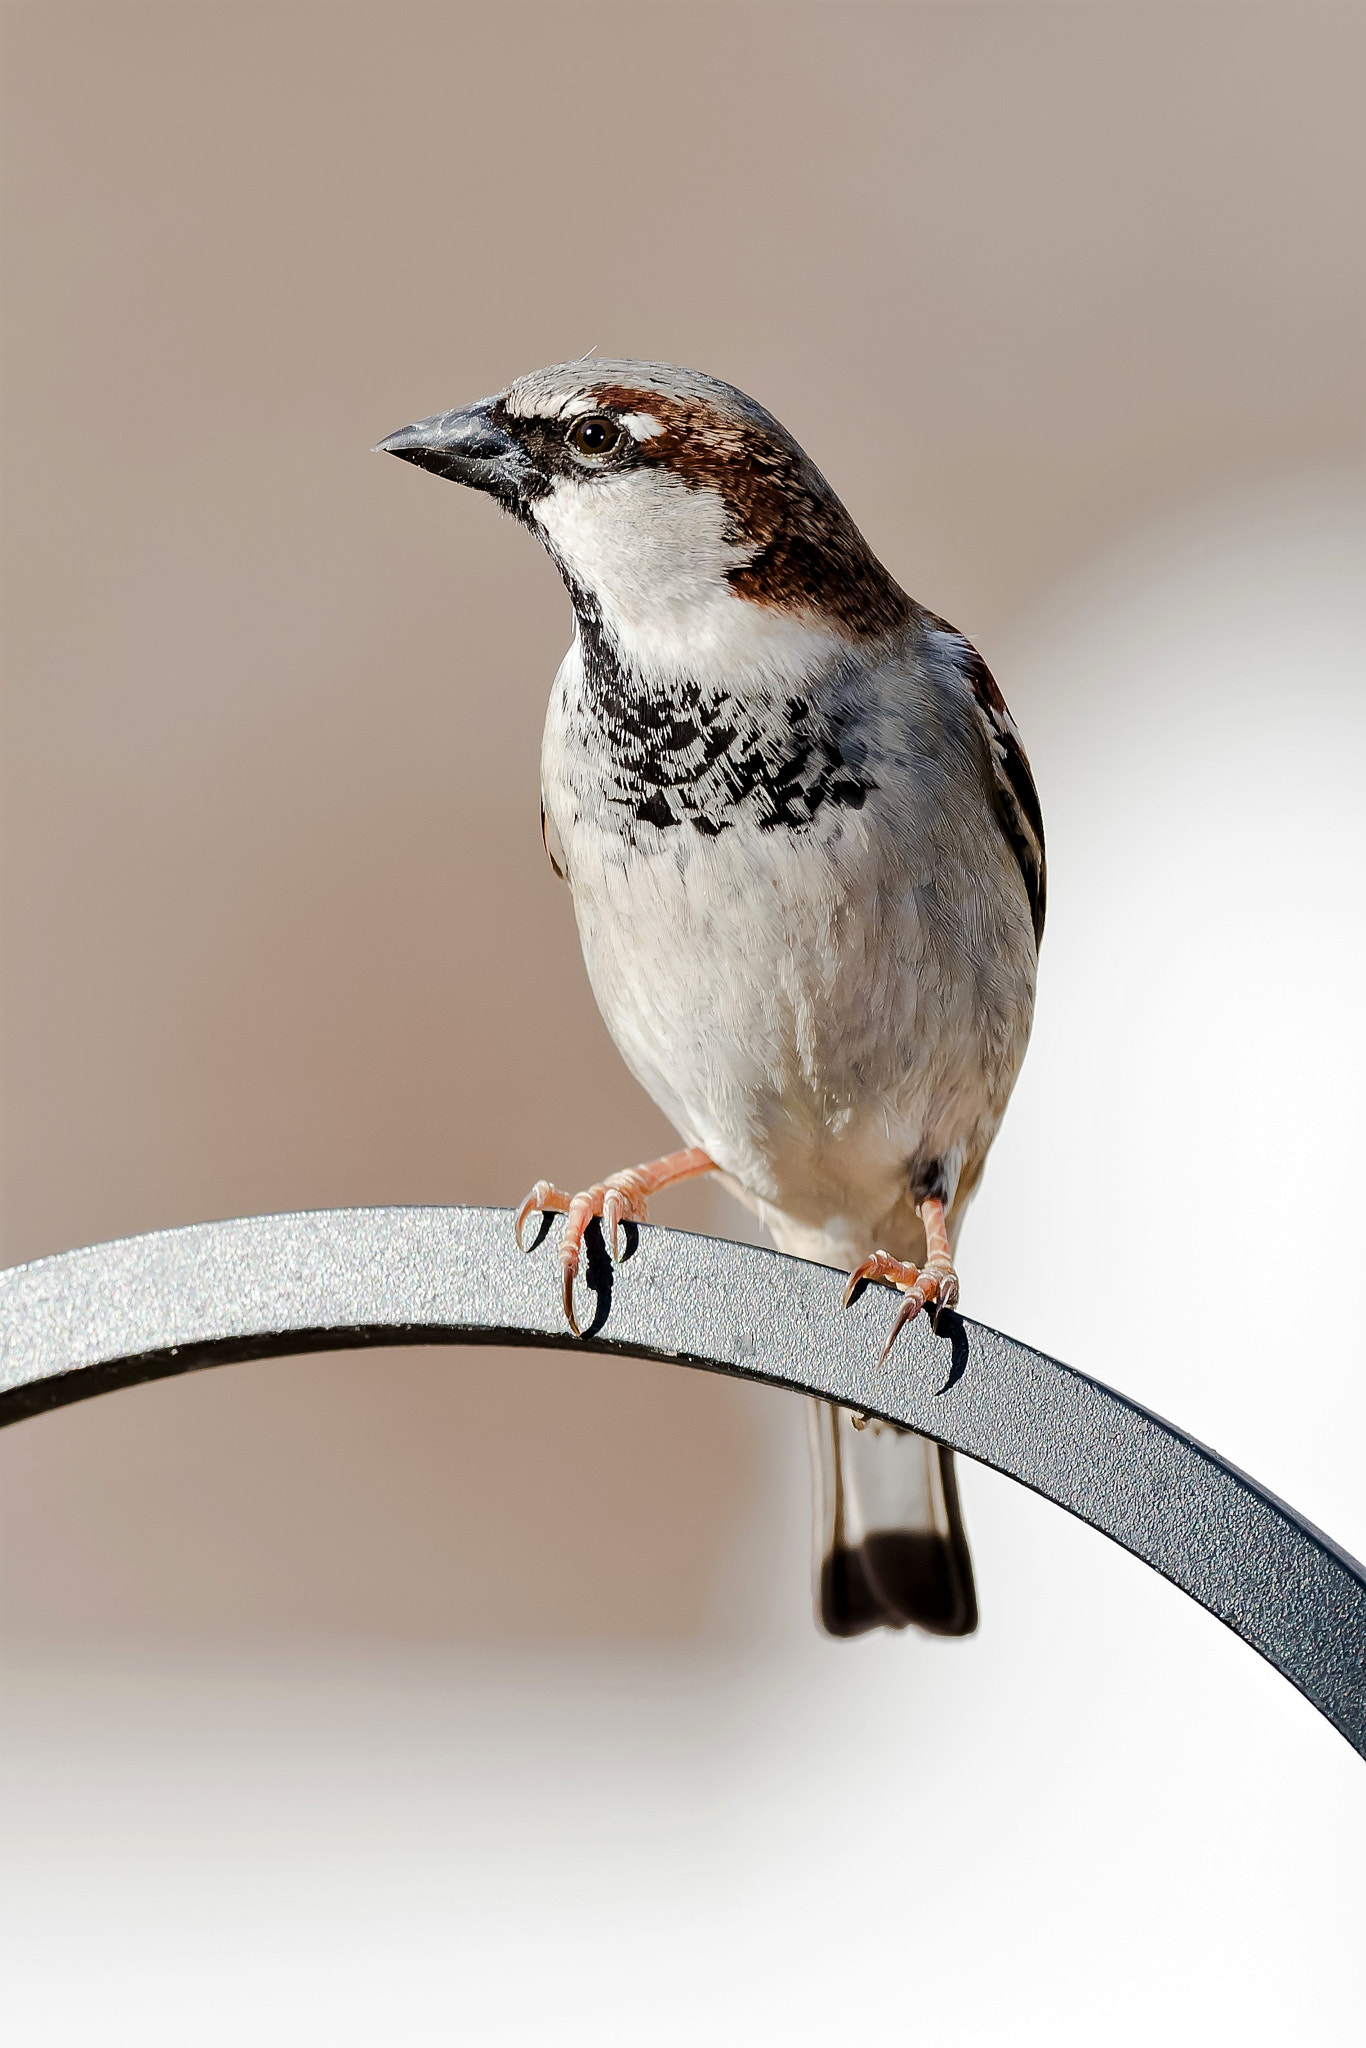 Nikon D810 sample photo. Male house sparrow photography